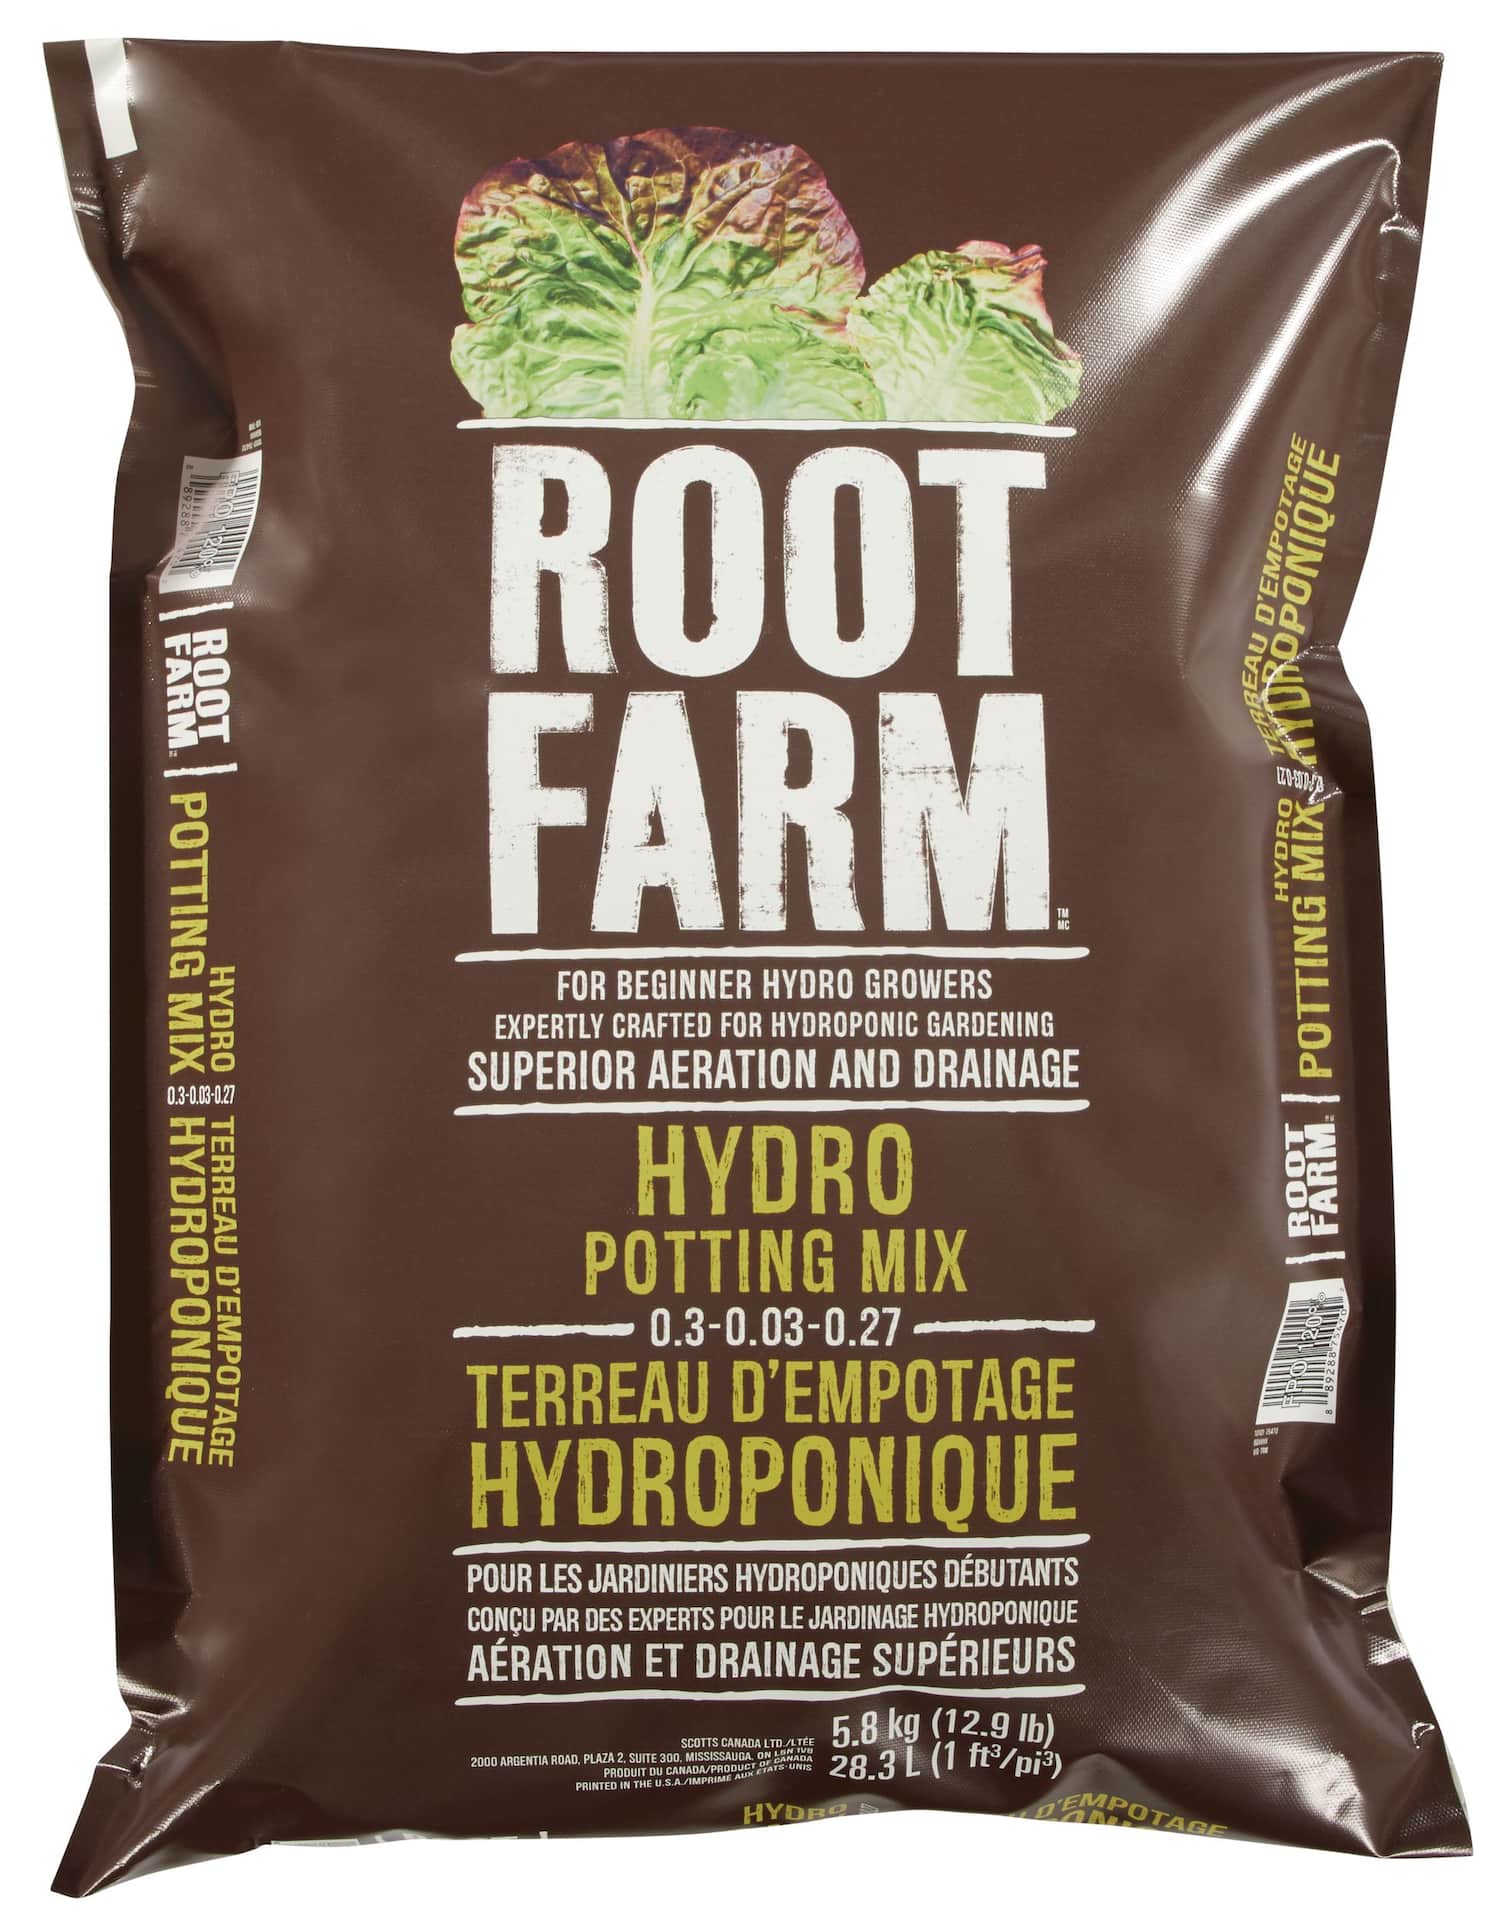 Root Farm Moisture Control Hydro Potting Mix, 0.3-0.03-0.27, 28.3-L